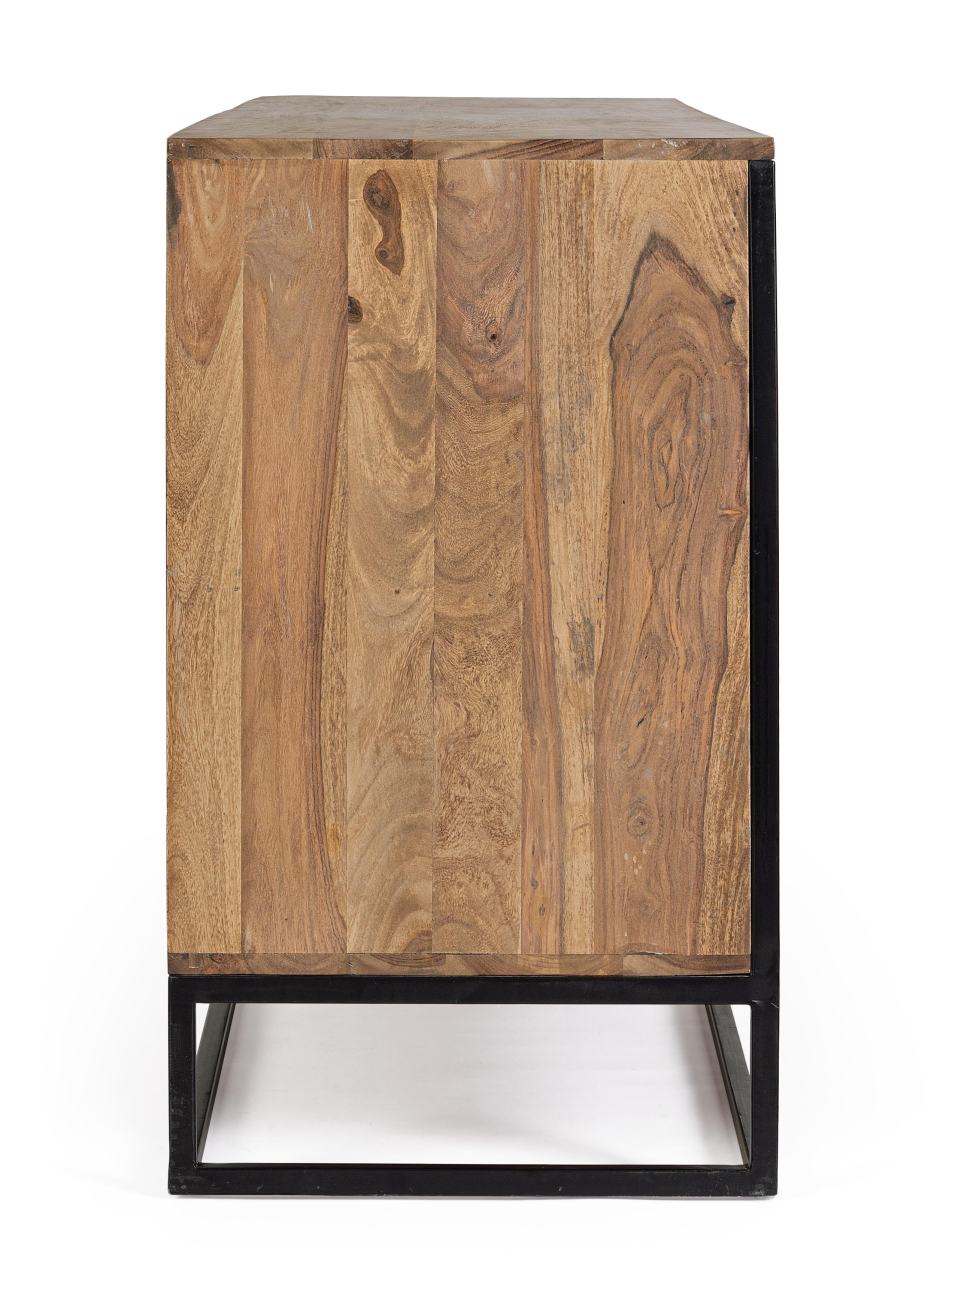 Das Sideboard Nartan überzeugt mit seinem modernen Stil. Gefertigt wurde es aus Sheesham-Holz, welches einen natürlichen Farbton besitzt. Das Gestell ist aus Metall und hat eine schwarze Farbe. Das Sideboard verfügt über vier Türen.